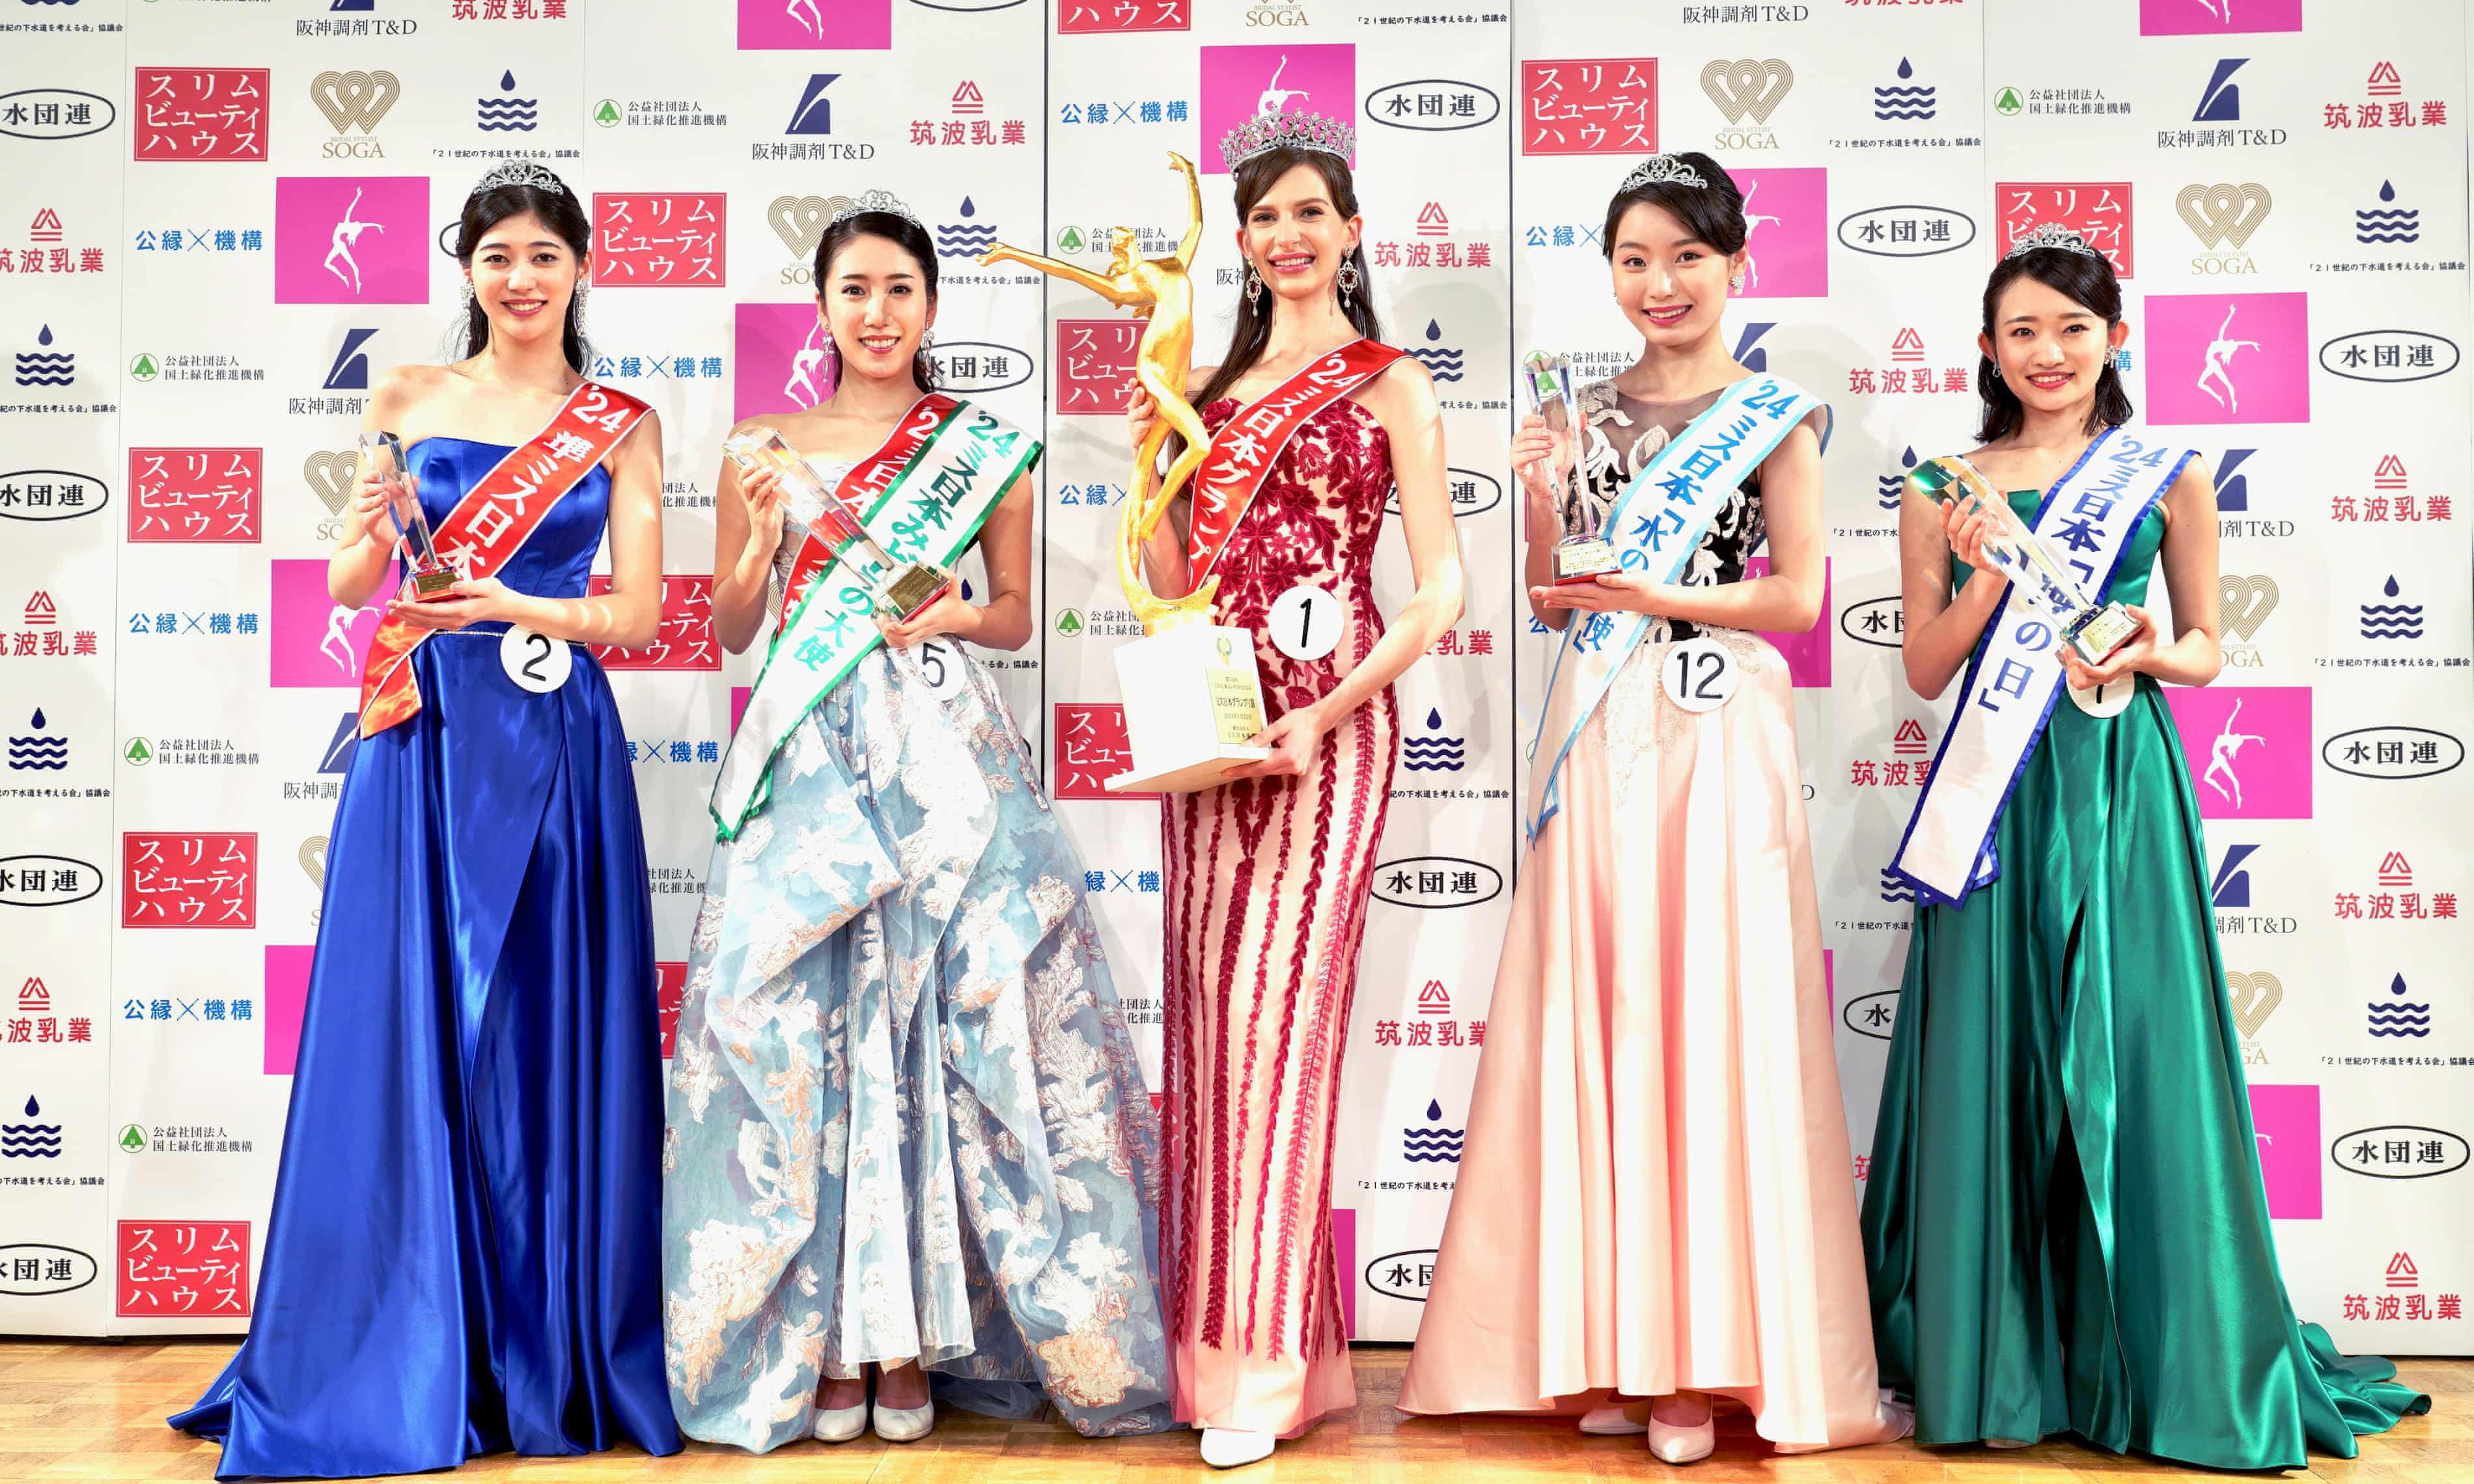 Ukraine-born Miss Japan returns title after revelations about affair (theguardian.com)